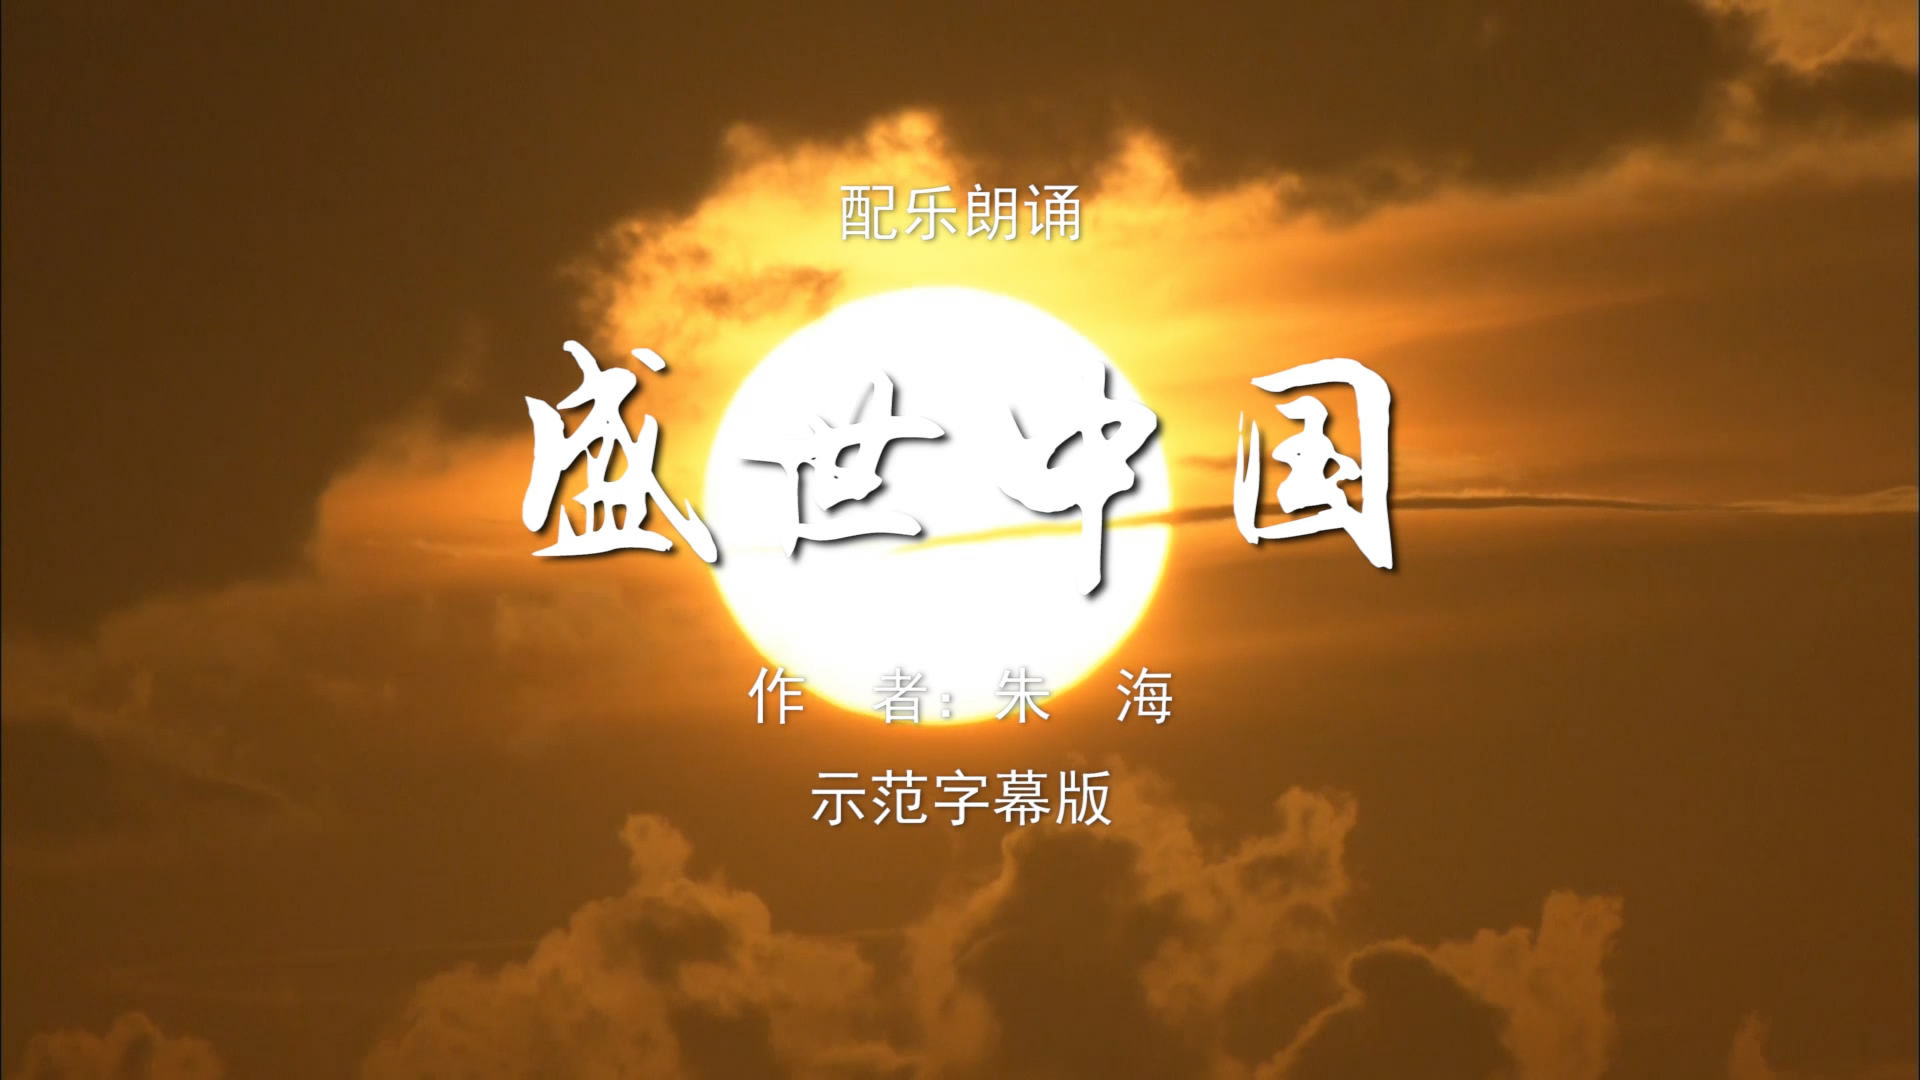 盛世中国 诗歌朗诵配乐伴奏舞台演出LED背景大屏幕视频素材TV